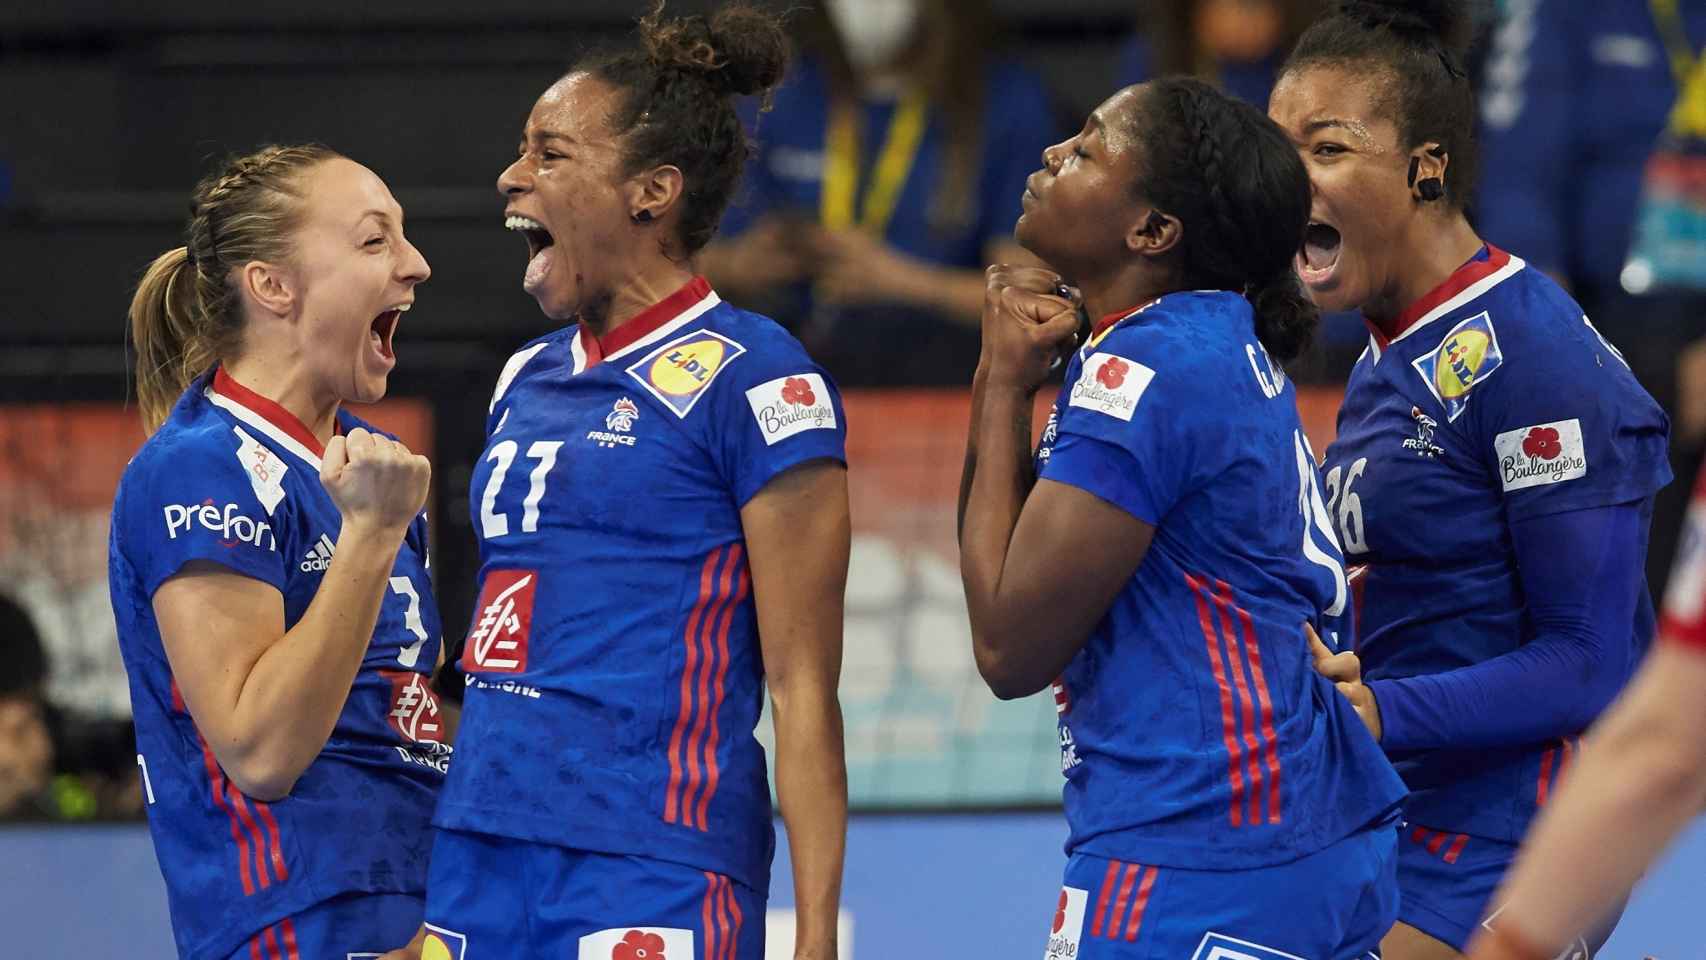 La selección francesa celebra el triunfo en las semifinales del Mundial de balonmano tras vencer a Dinamarca.